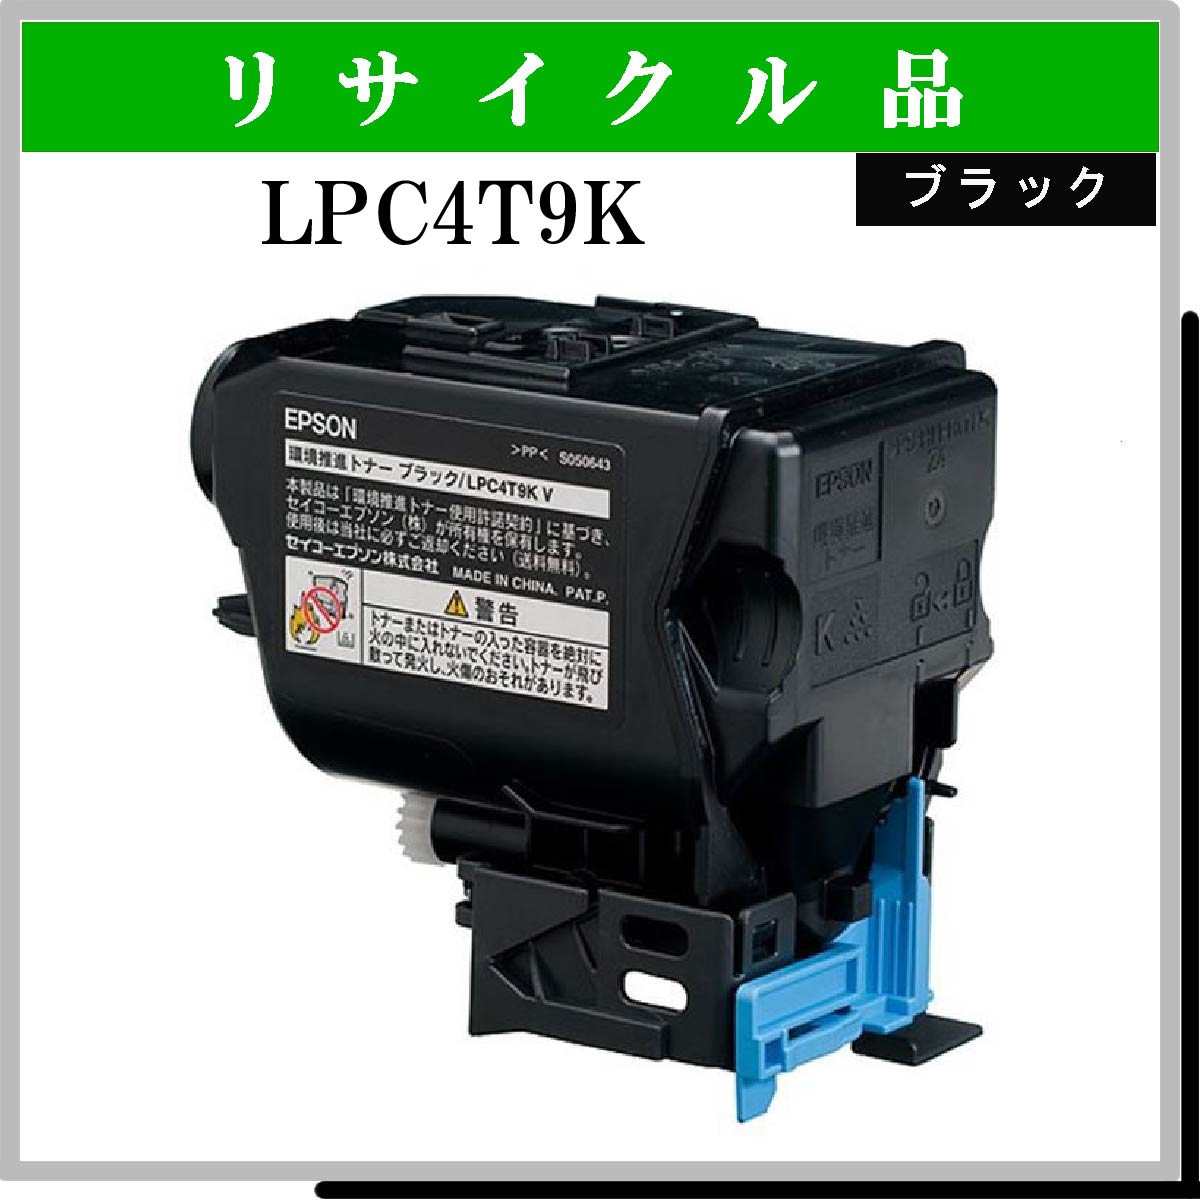 宅送] EPSON LPC4T9K LP-S820 M720F用 トナーカートリッジ ブラック 6300ページ